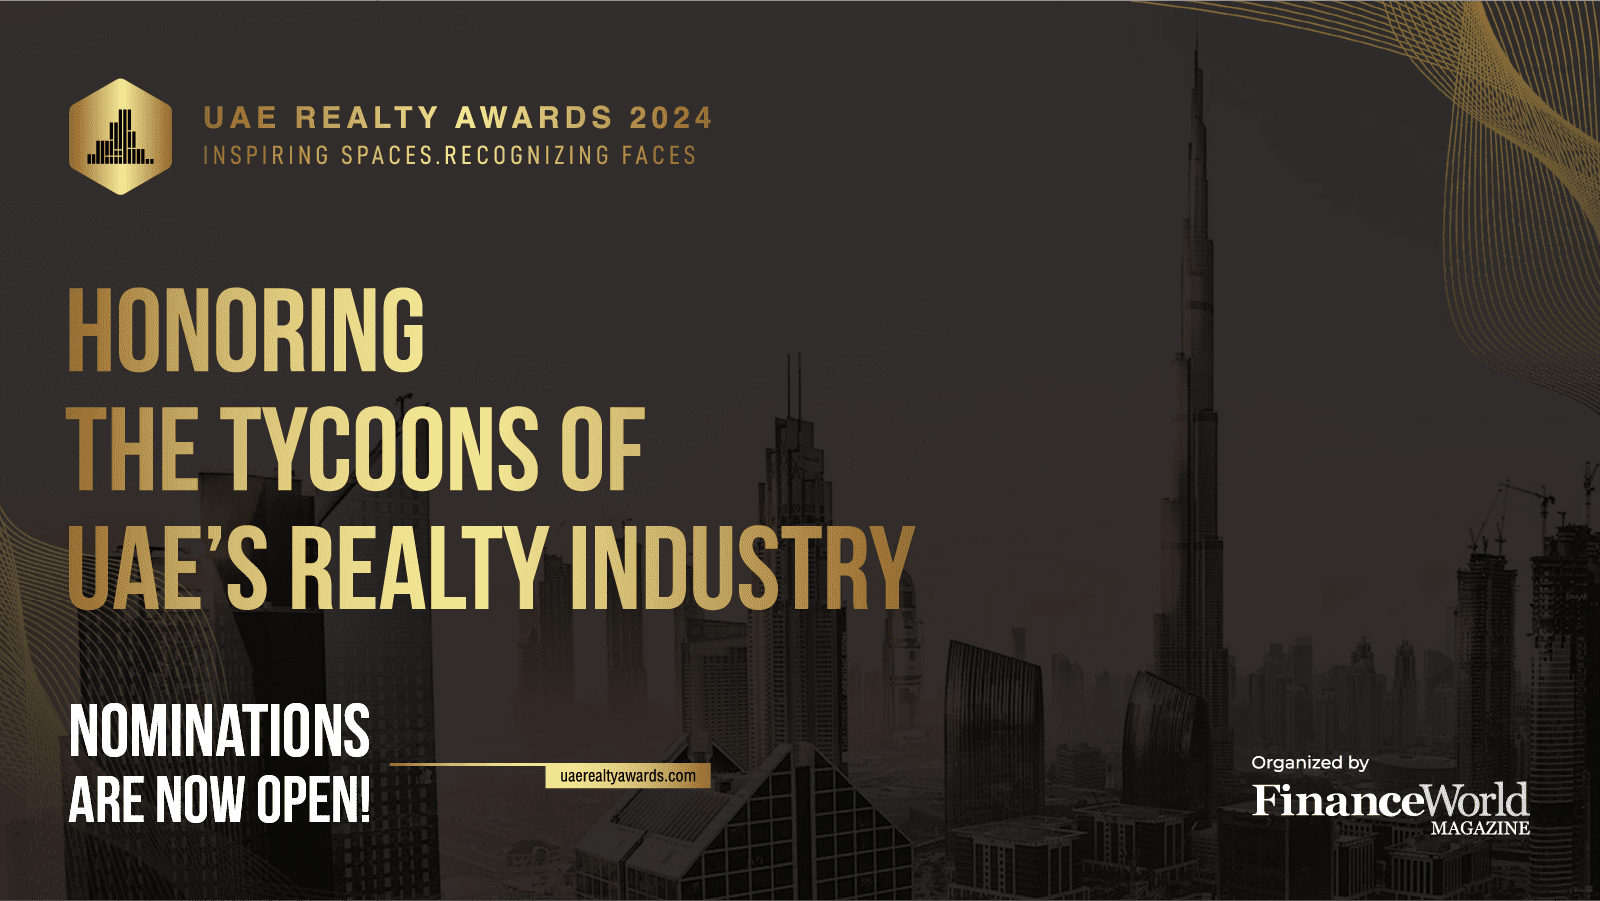 UAE Realty Awards